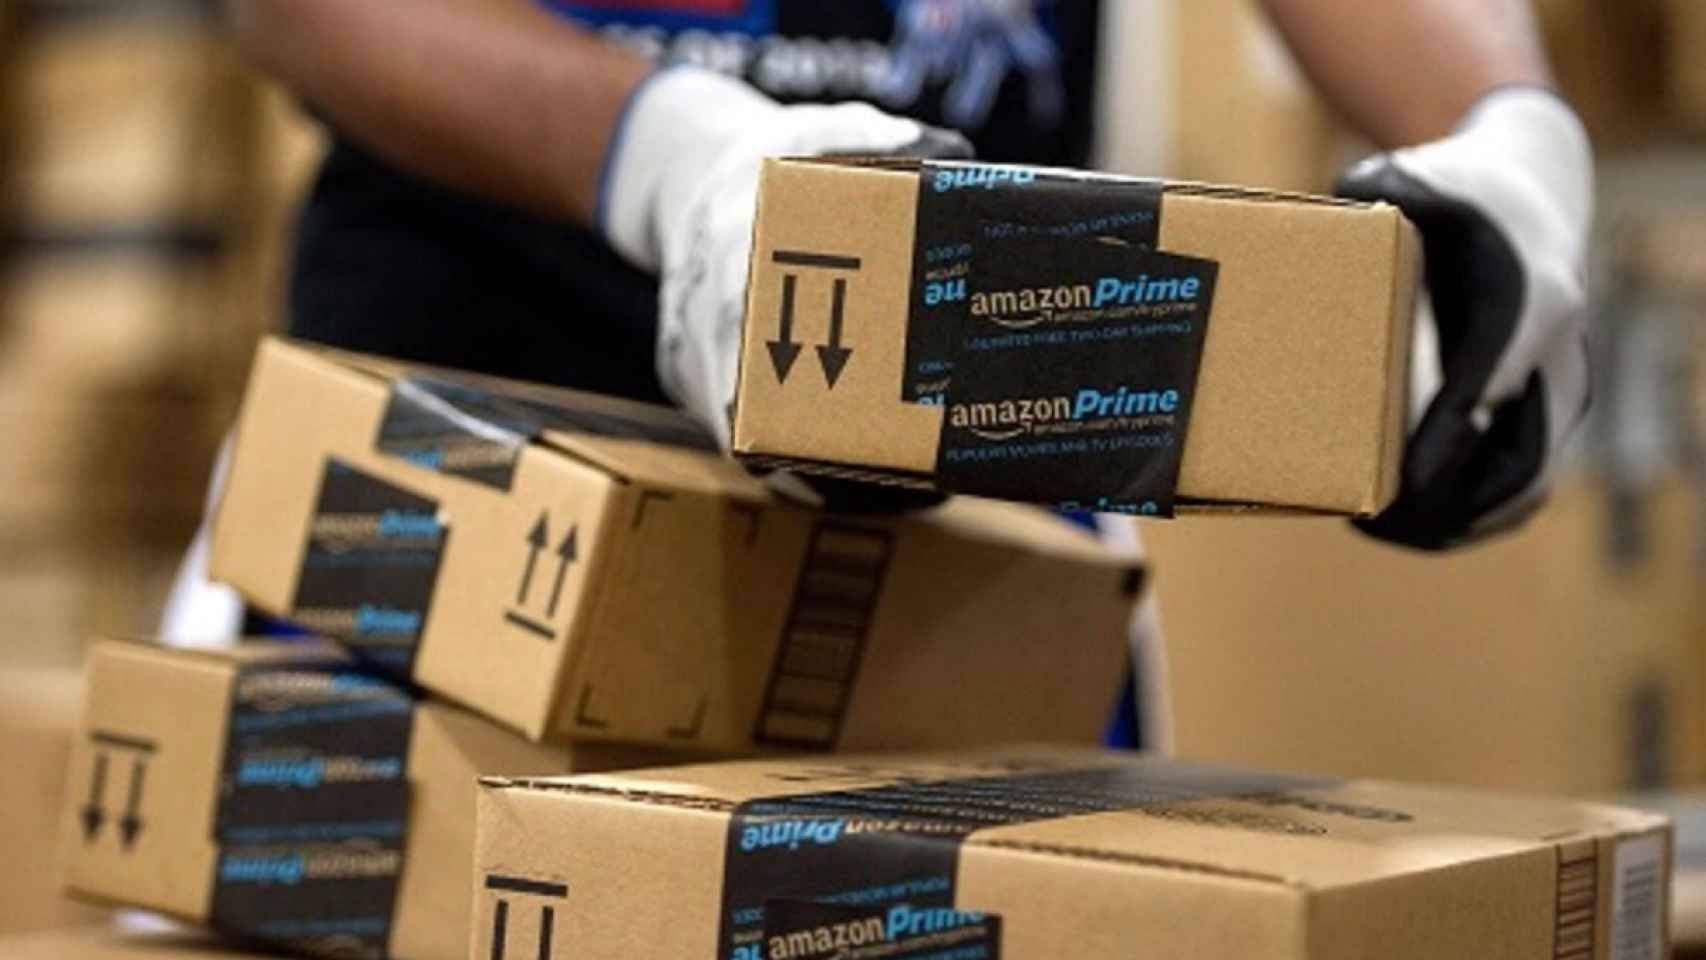 Bruselas obliga a Amazon a devolver 250 millones por ayudas fiscales ilegales